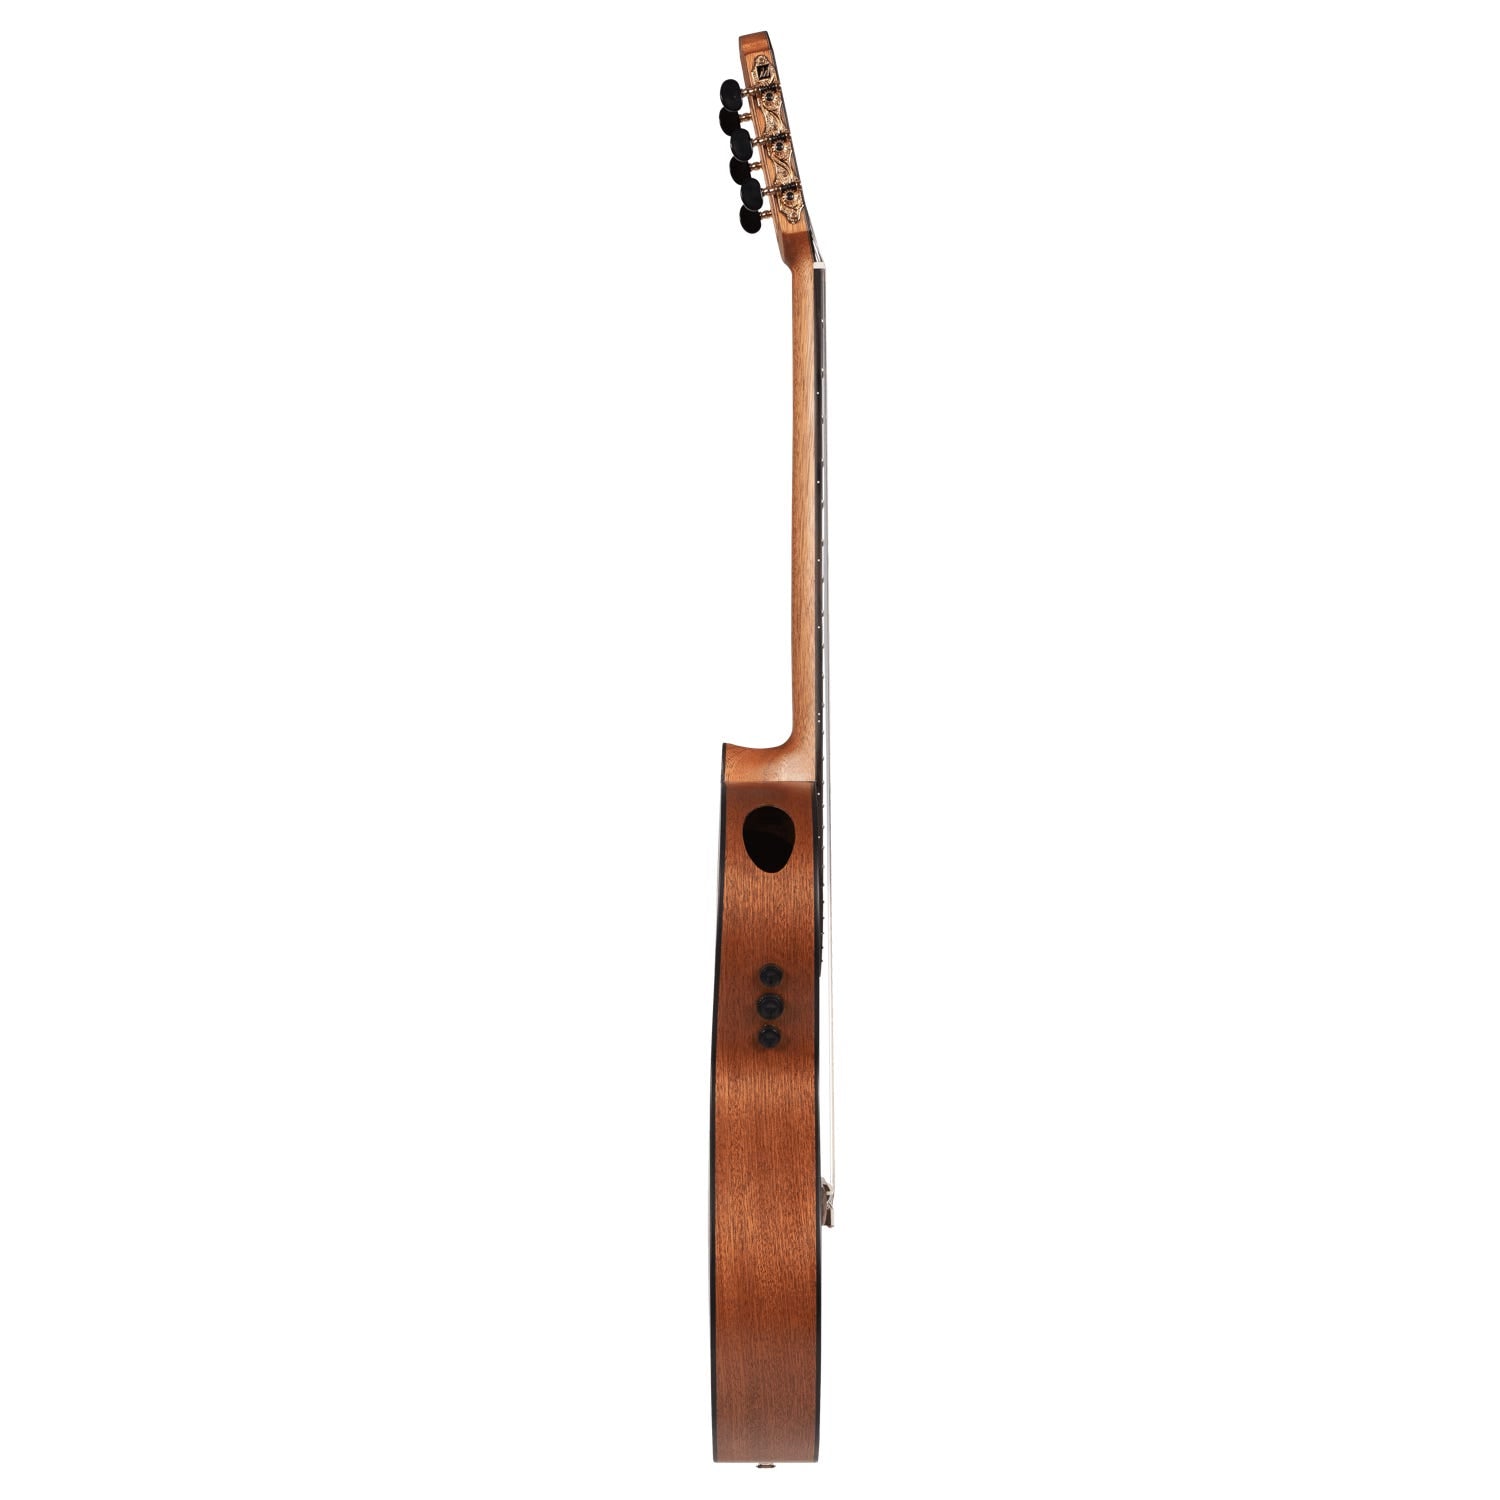 Katoh MS14MH-Performer Series Classical Guitar